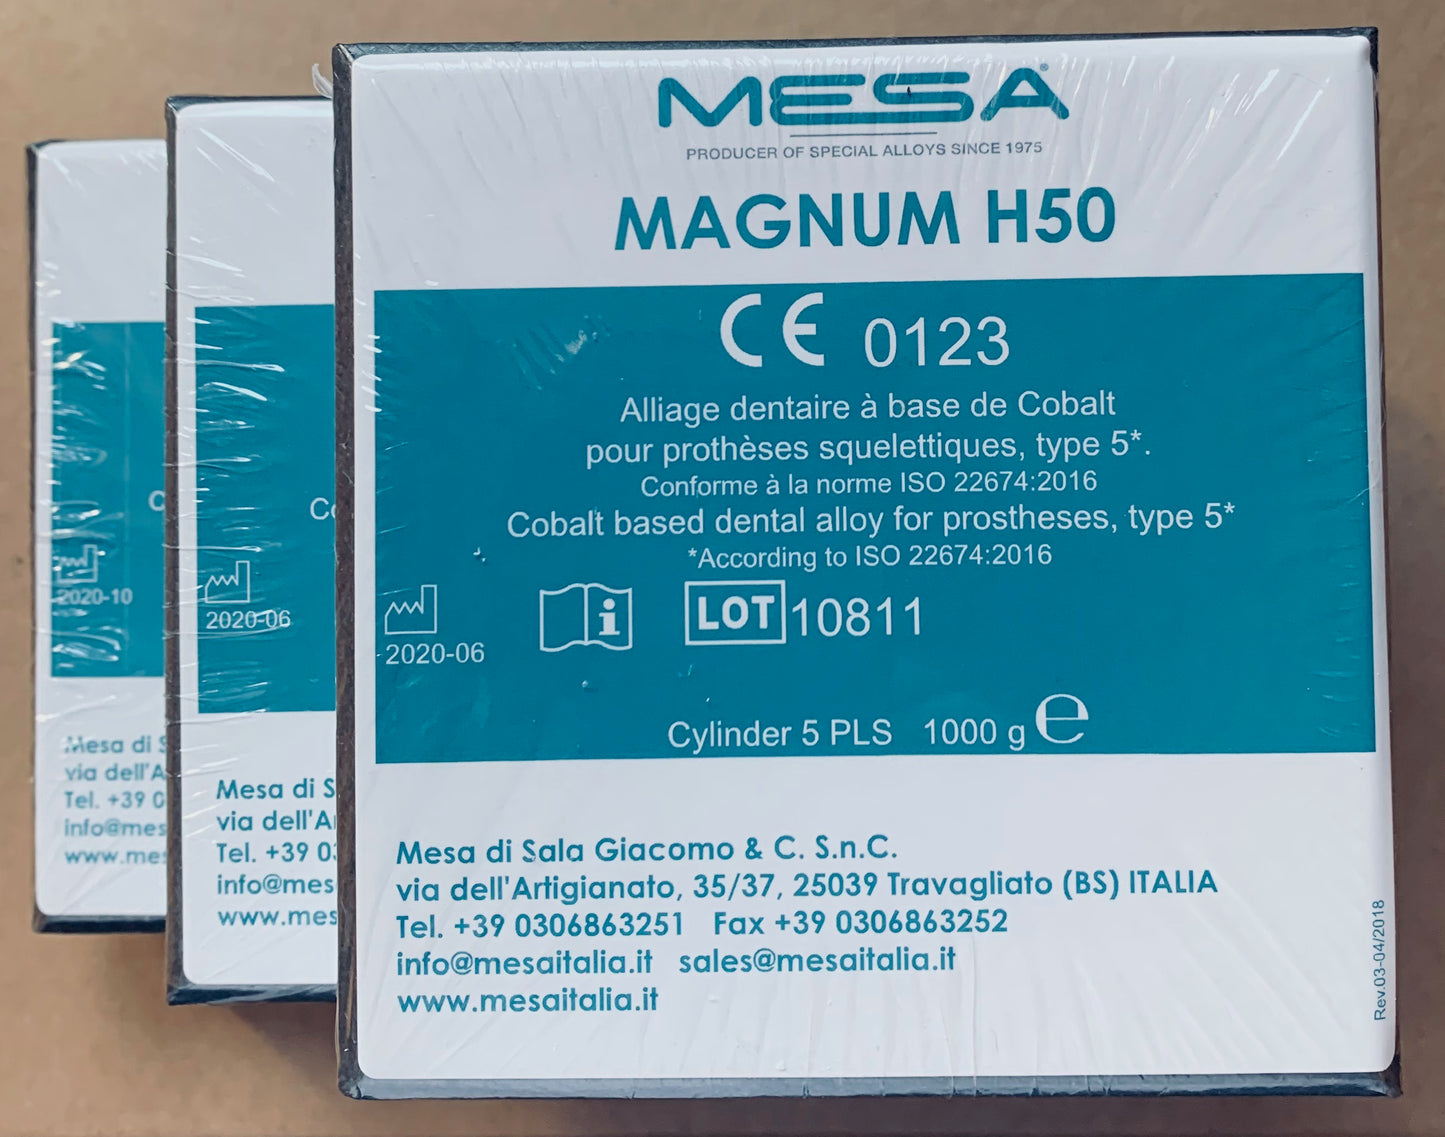 MAGNUM H50